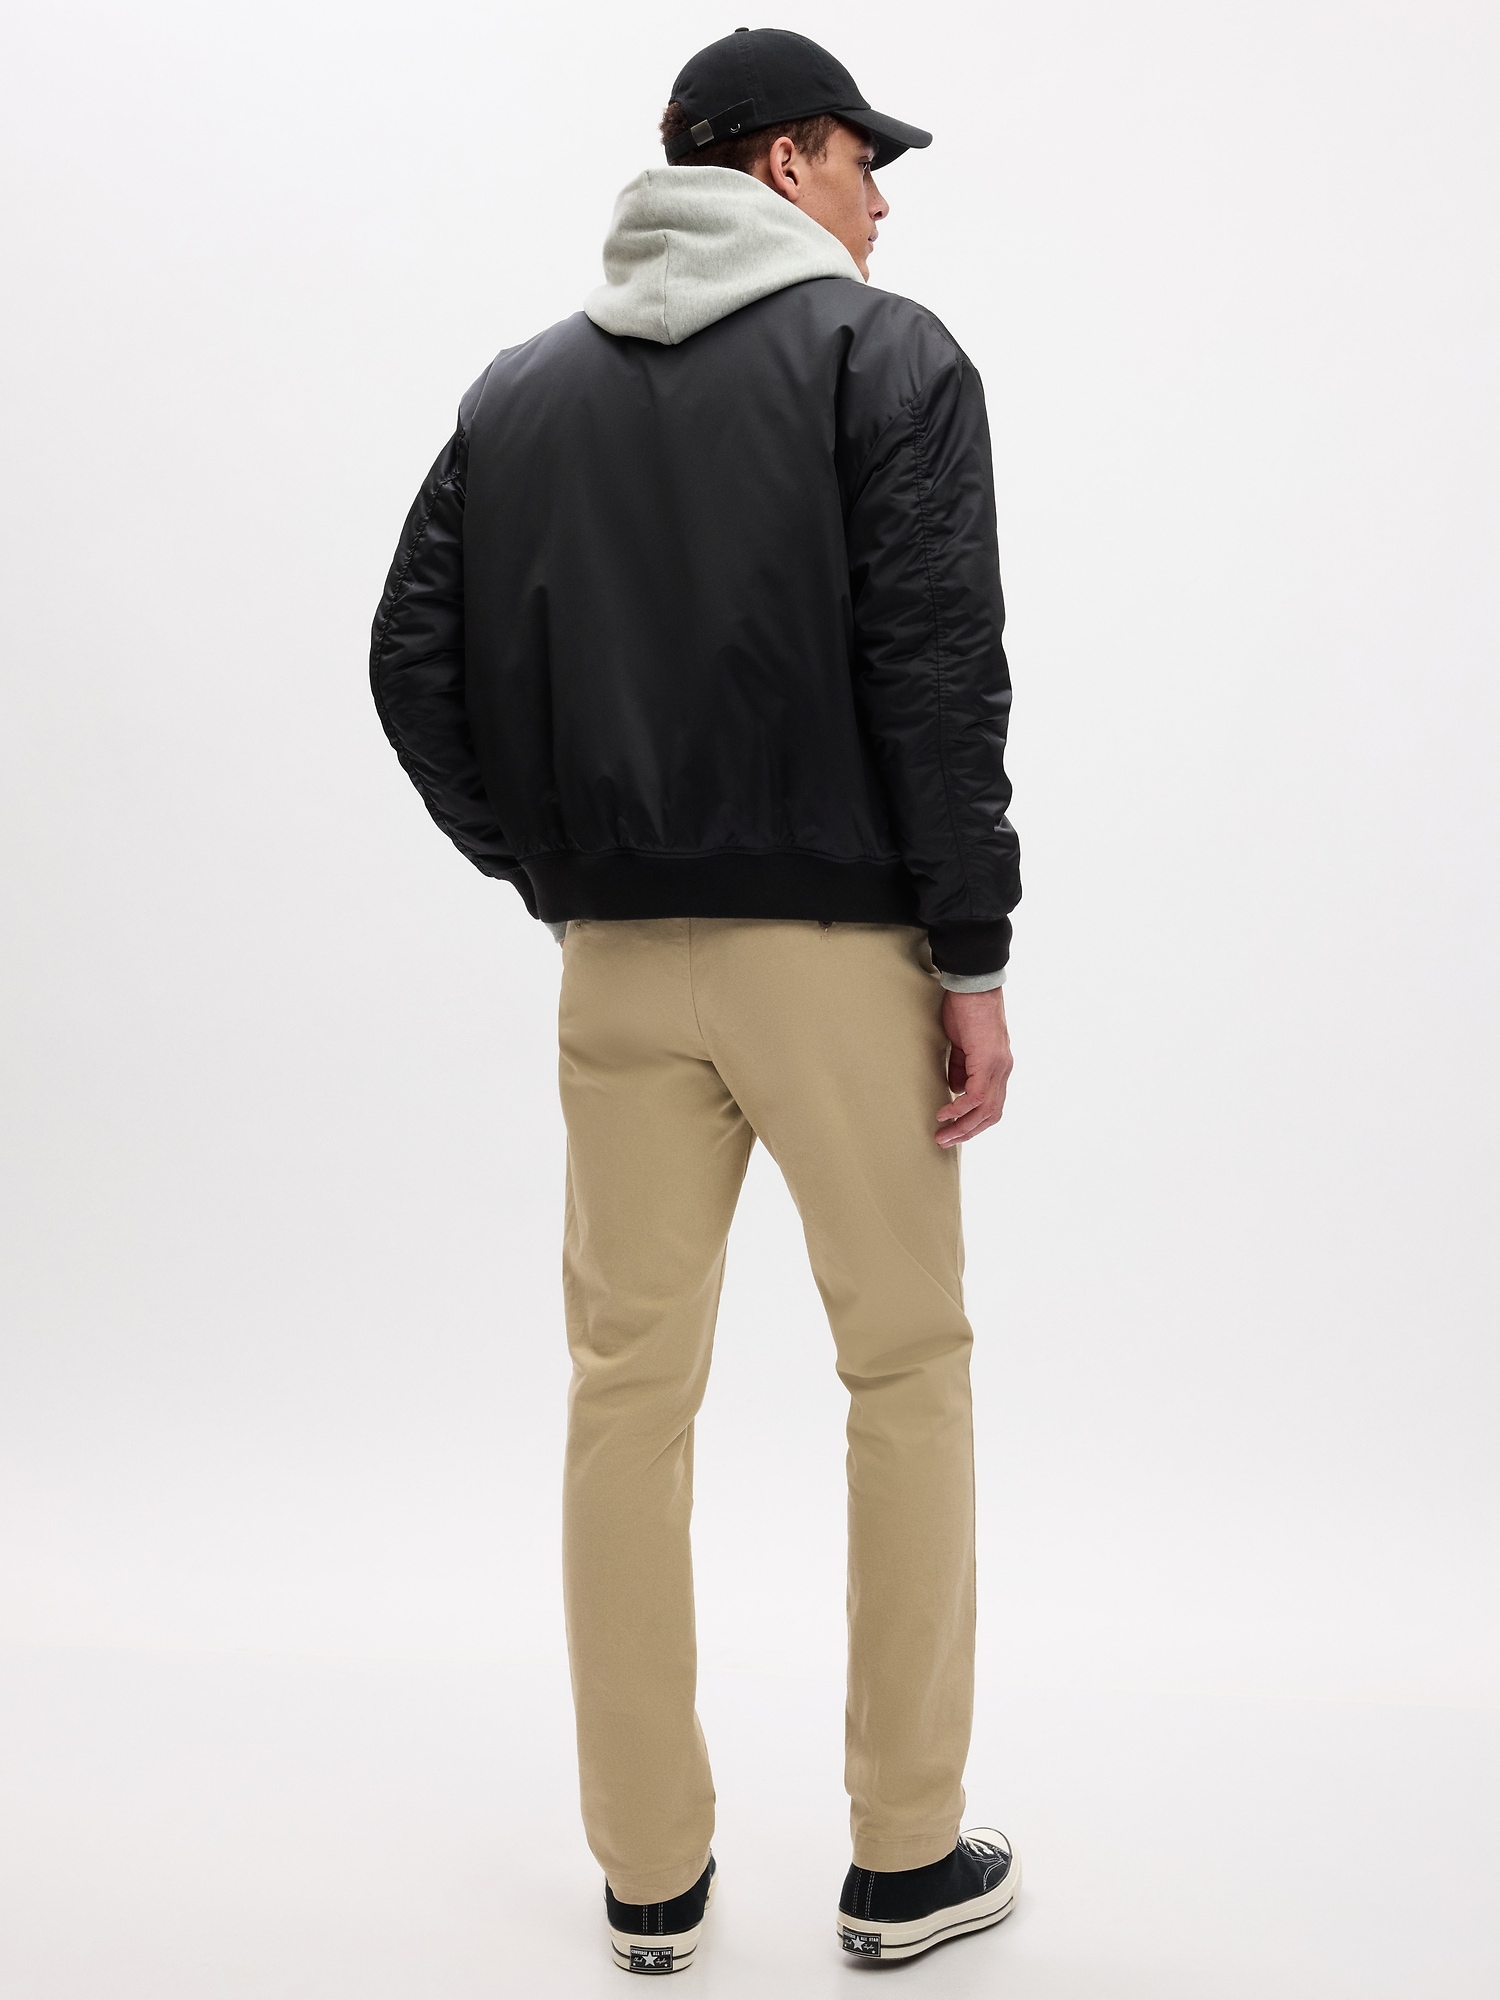 Gap Modern Khakis In Slim Fit With Flex In Brown Noir